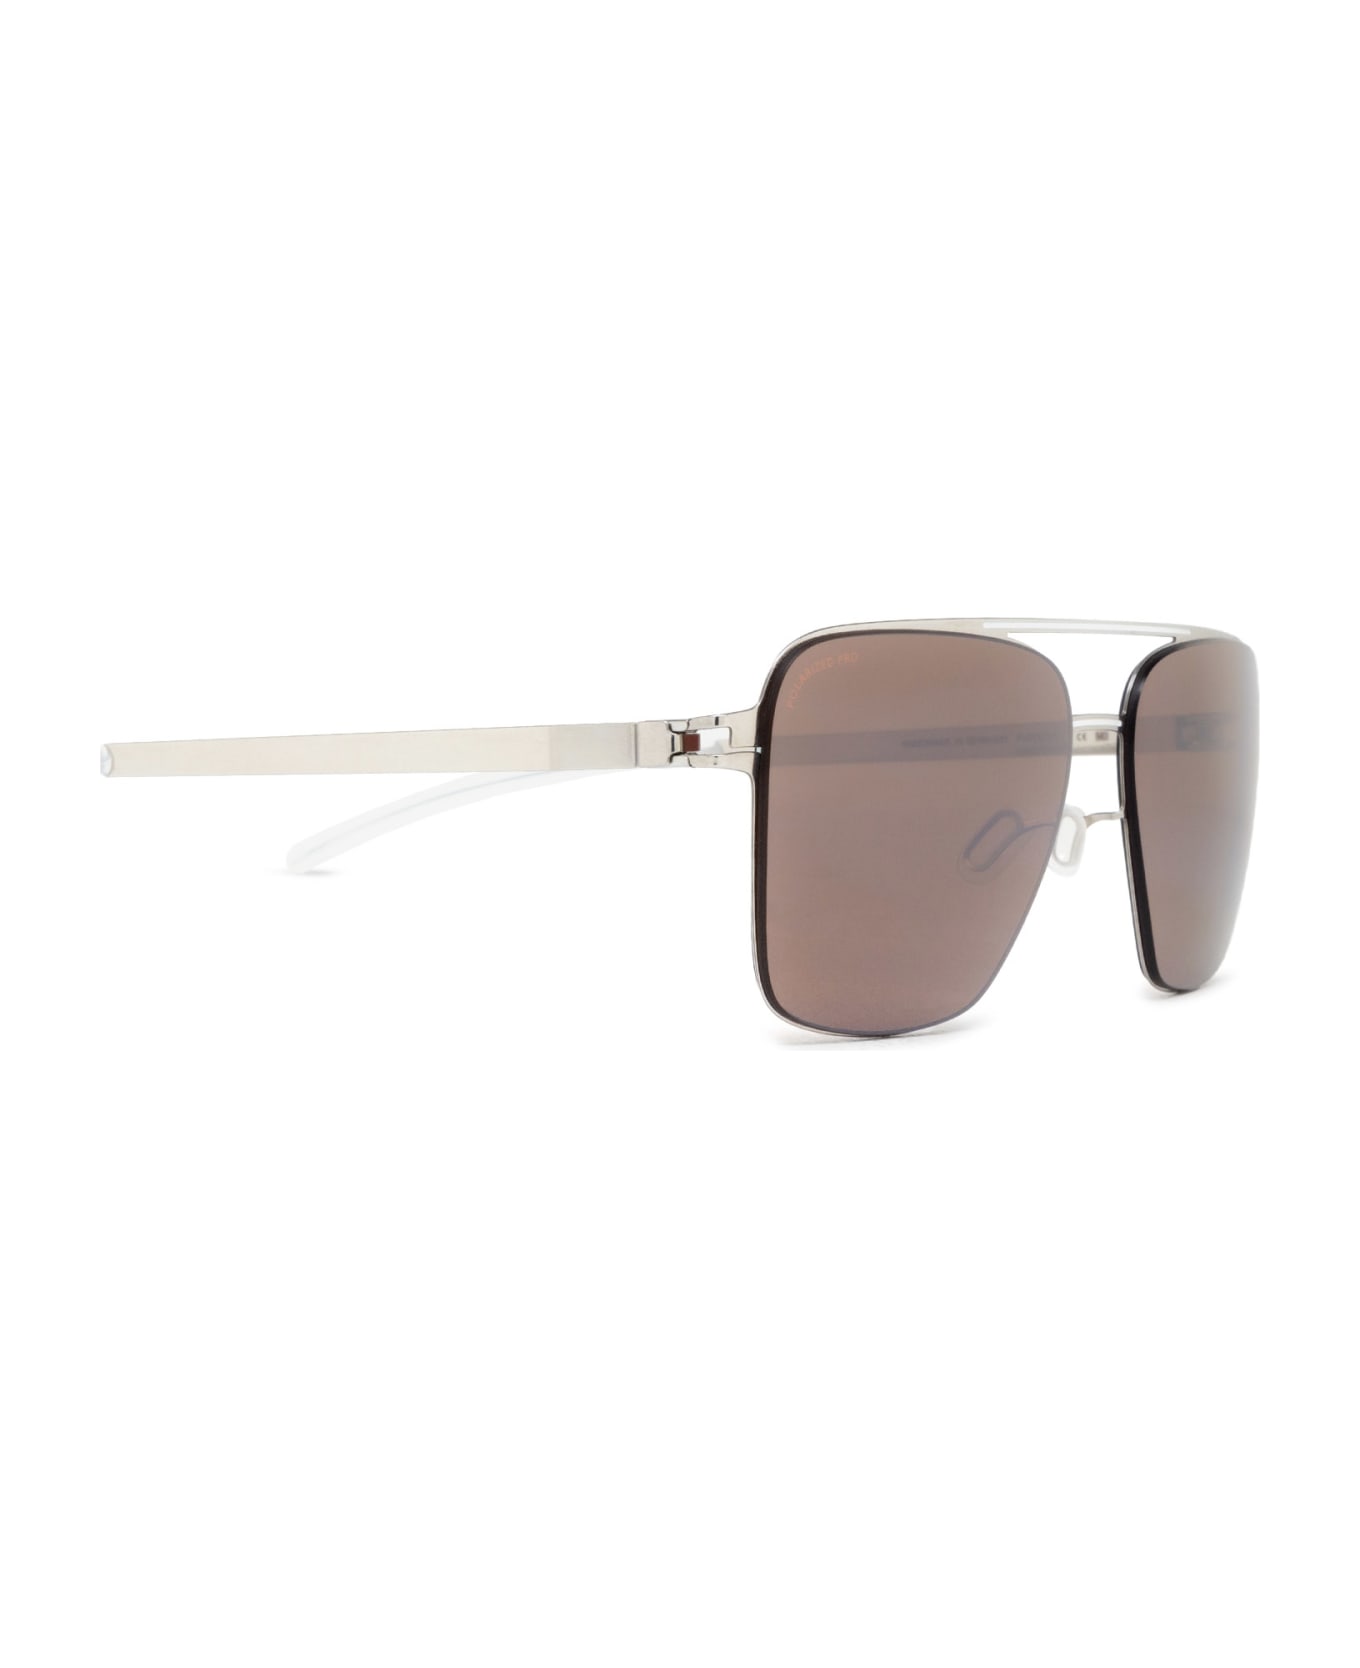 Mykita Bernie Sun Silver/white Sunglasses - Silver/White